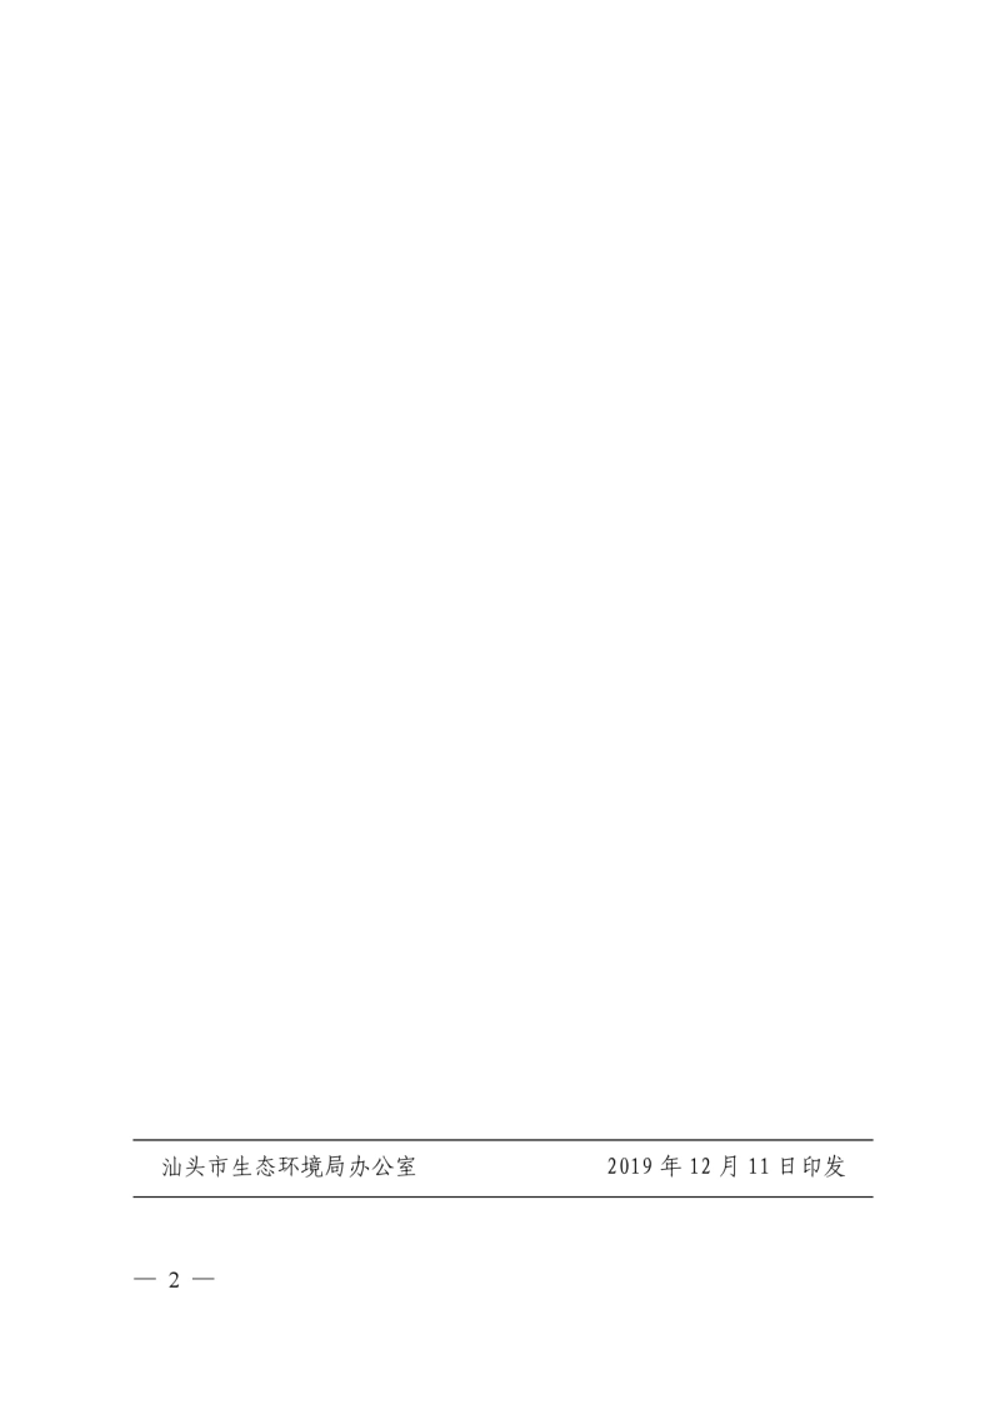 汕+头+市+生+态+环+境+局关于公布2019年度（第七批）纳入市级环保专项资金项目库项目技术评估结果的通知+(2)--蚁丹-2.jpg